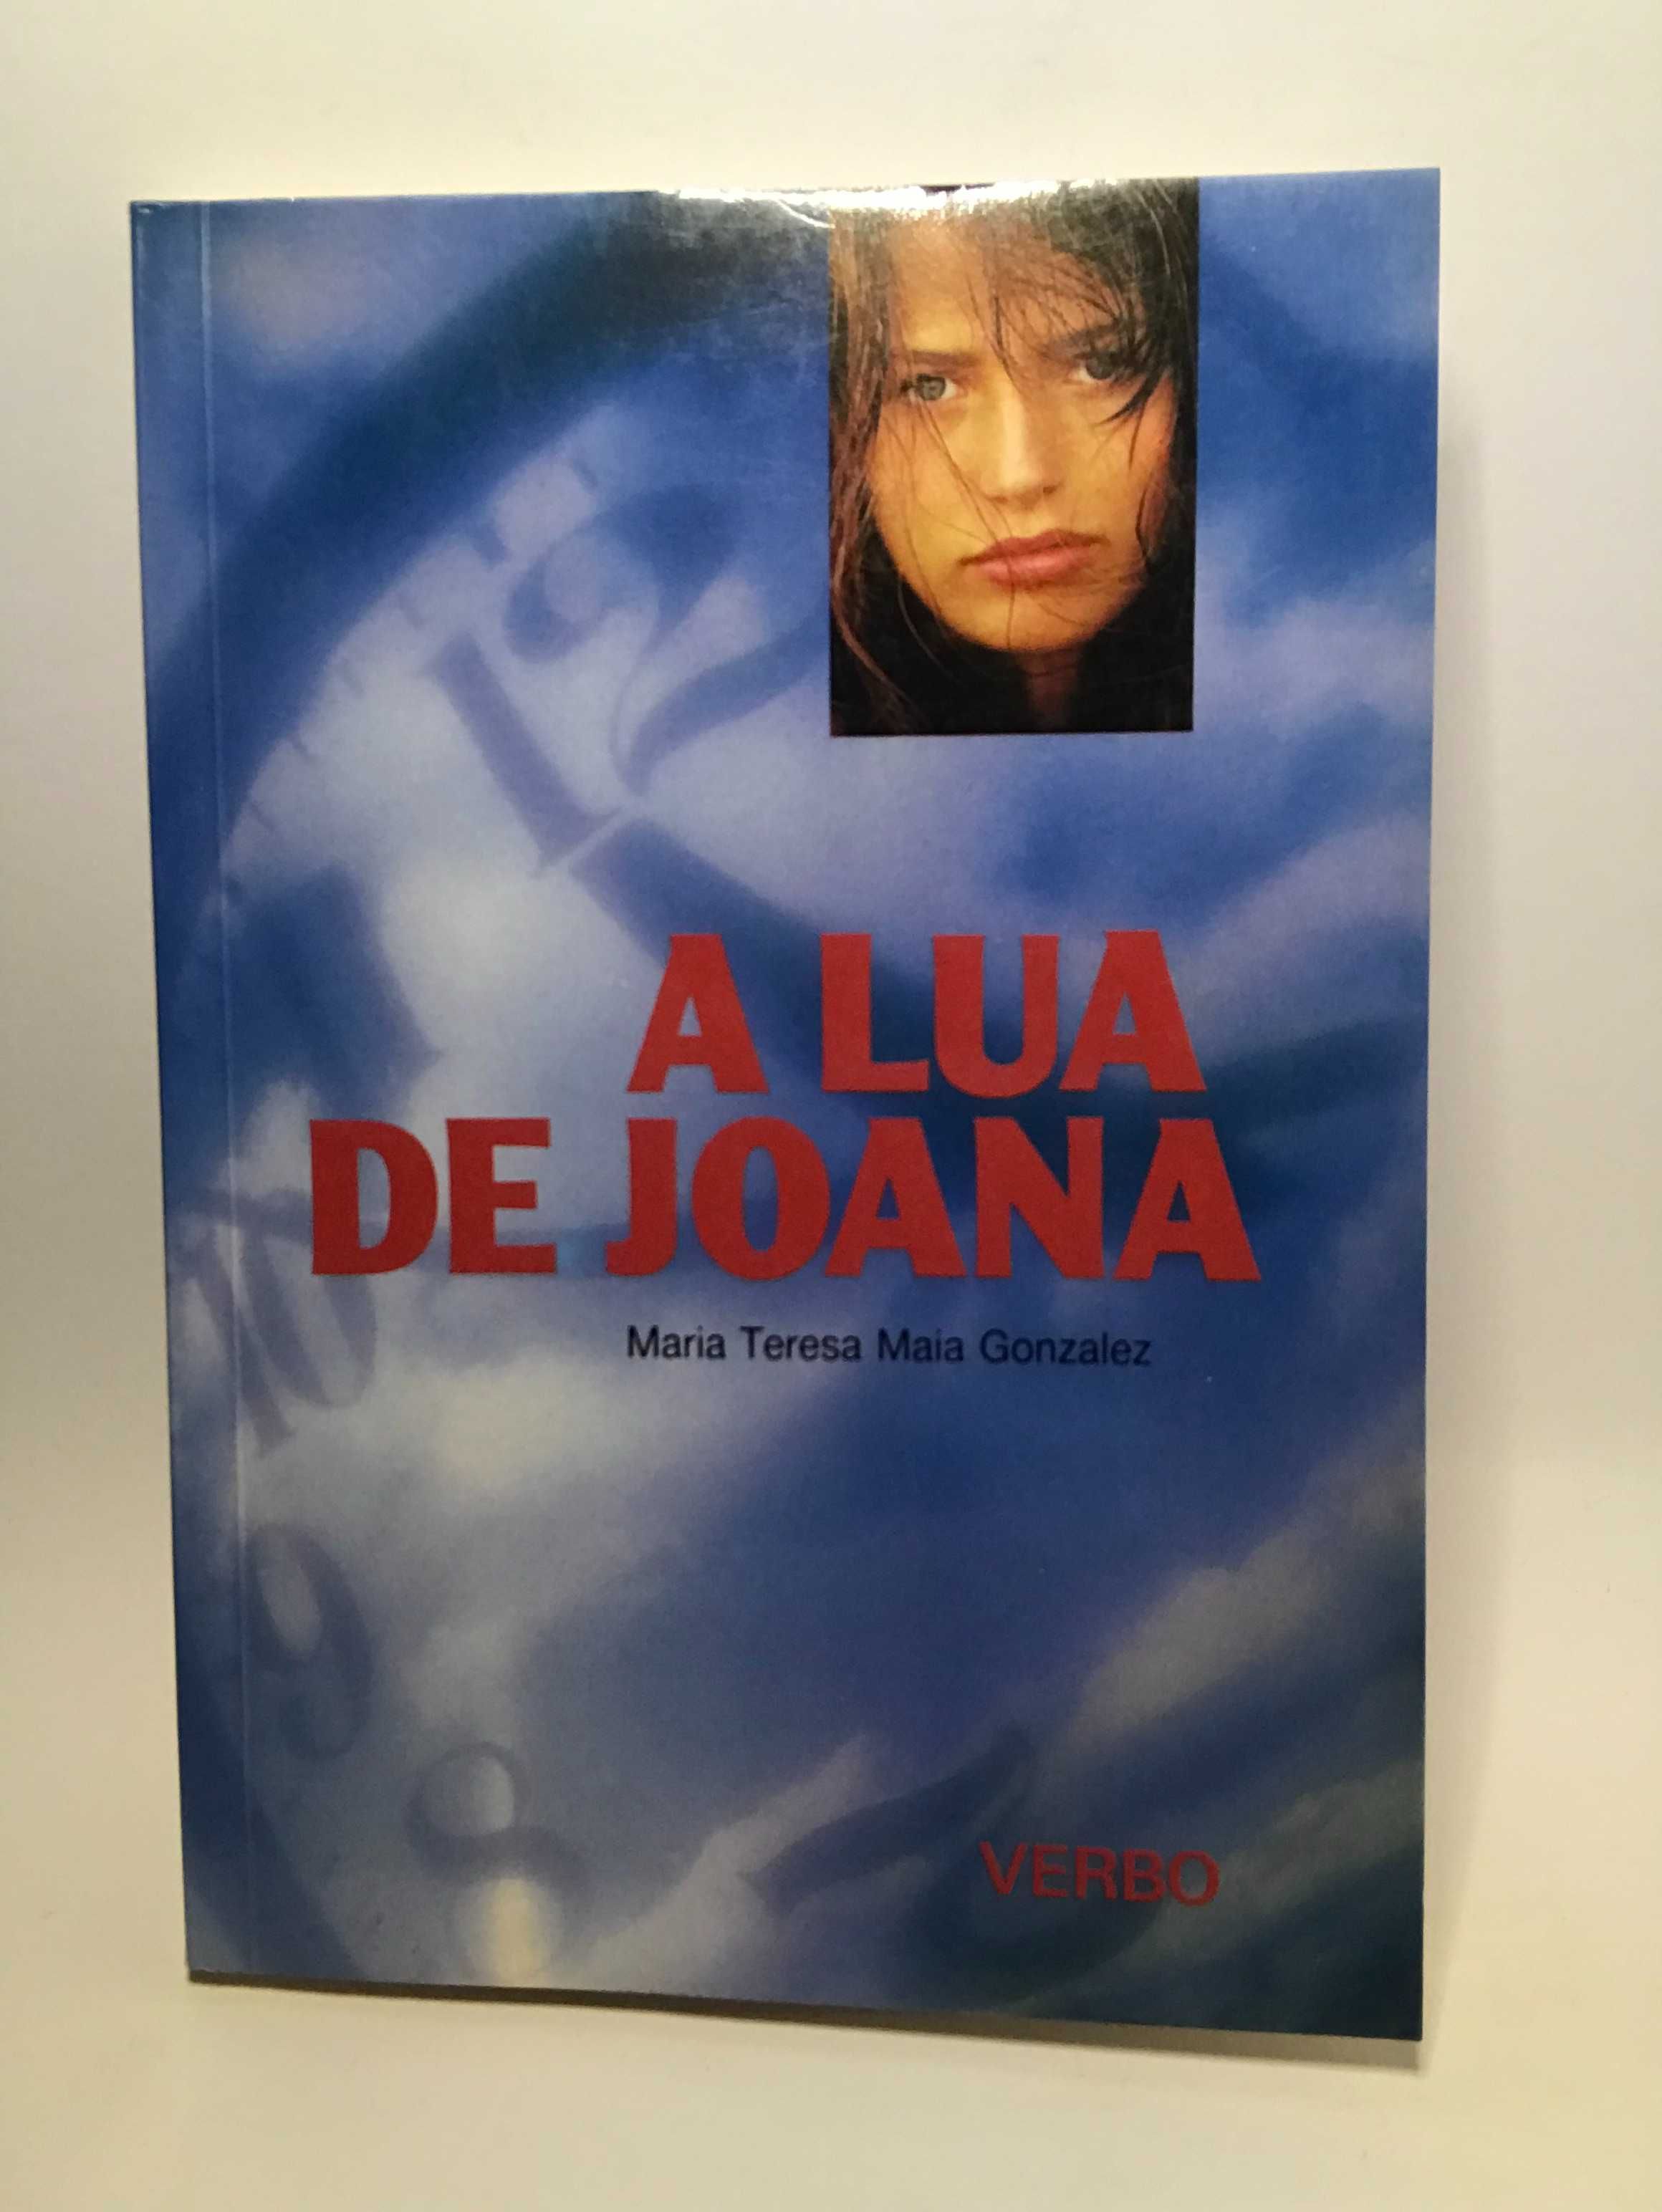 A Lua de Joana
de Maria Teresa Maia Gonzalez